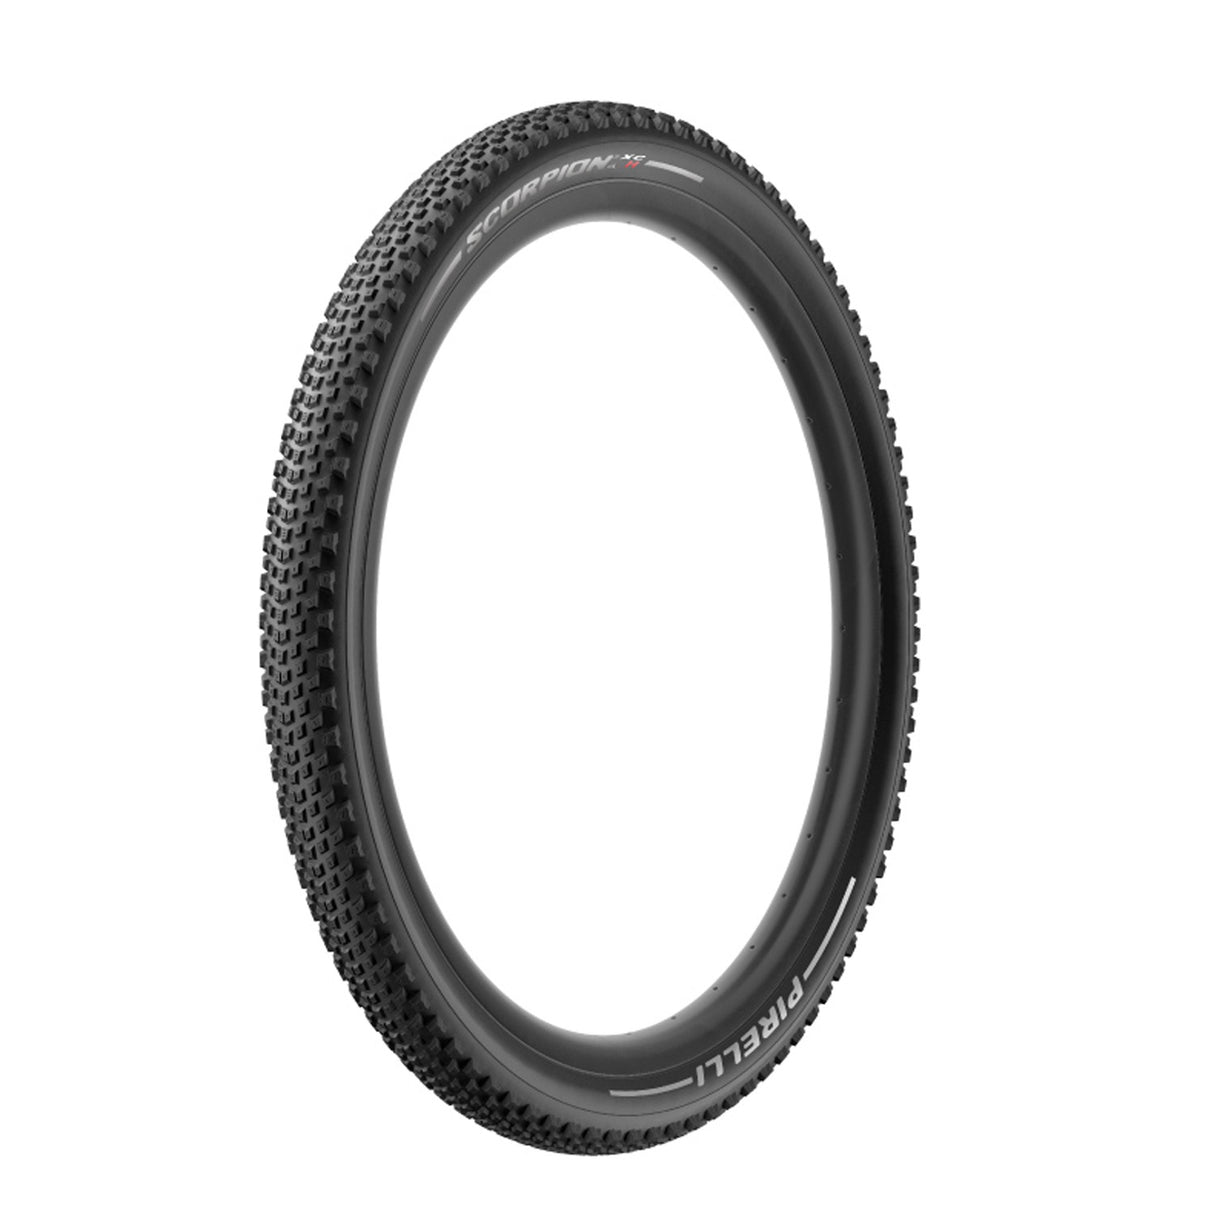 Pirelli Scorpion XC H 29" MTB Tyre